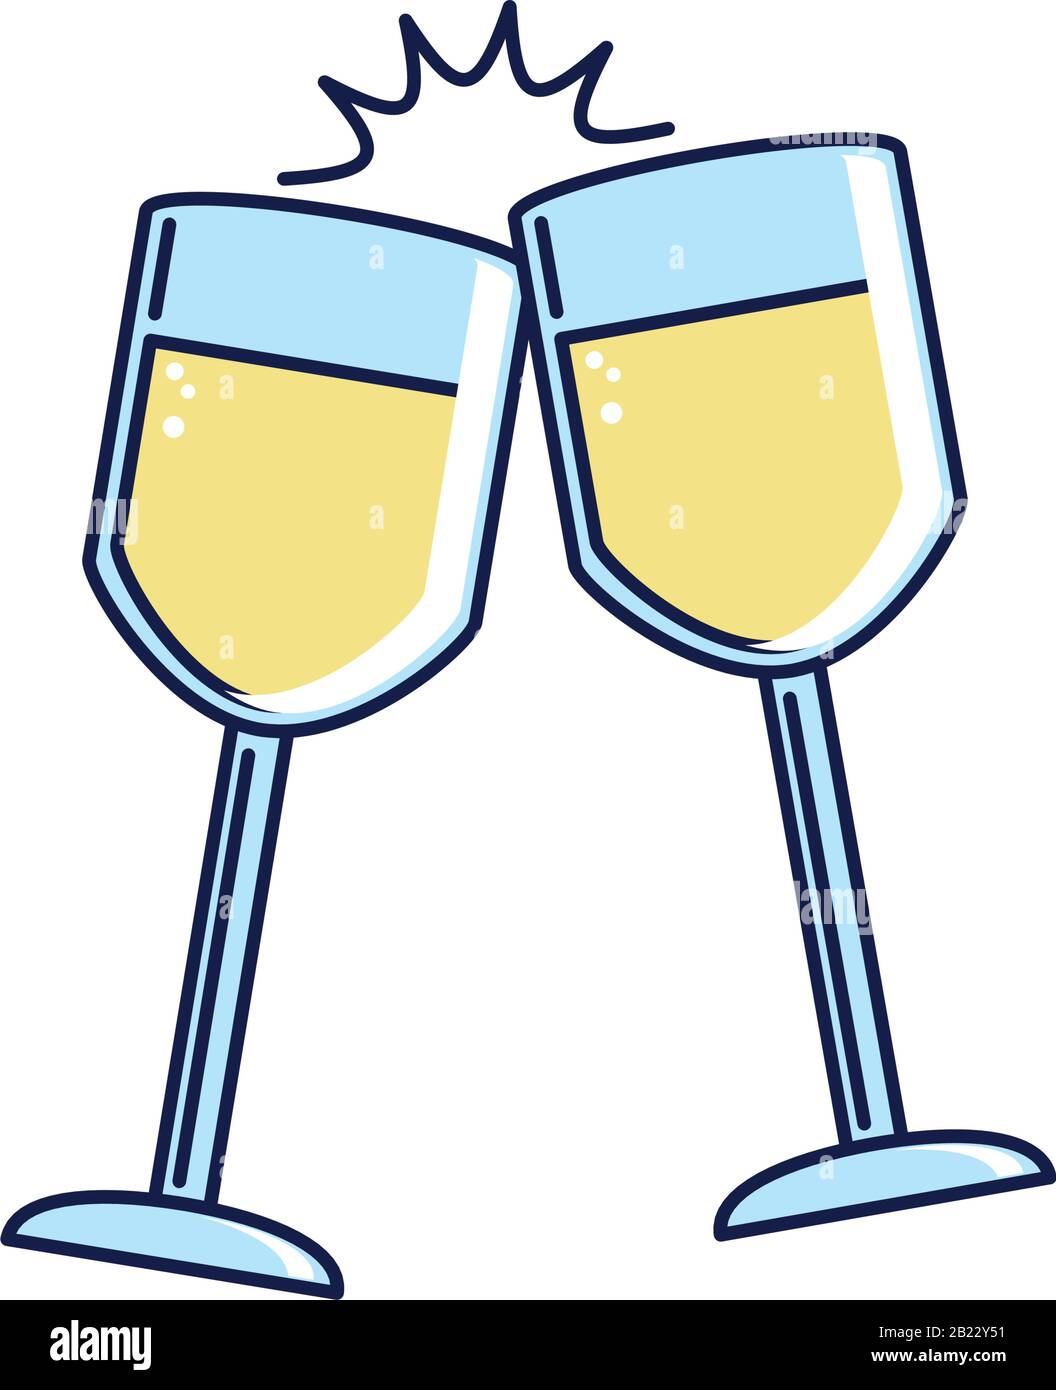 Joyeux Anniversaire Toast Coupe De Champagne Celebration Fete Illustration Vectorielle Et Style De Remplissage Image Vectorielle Stock Alamy